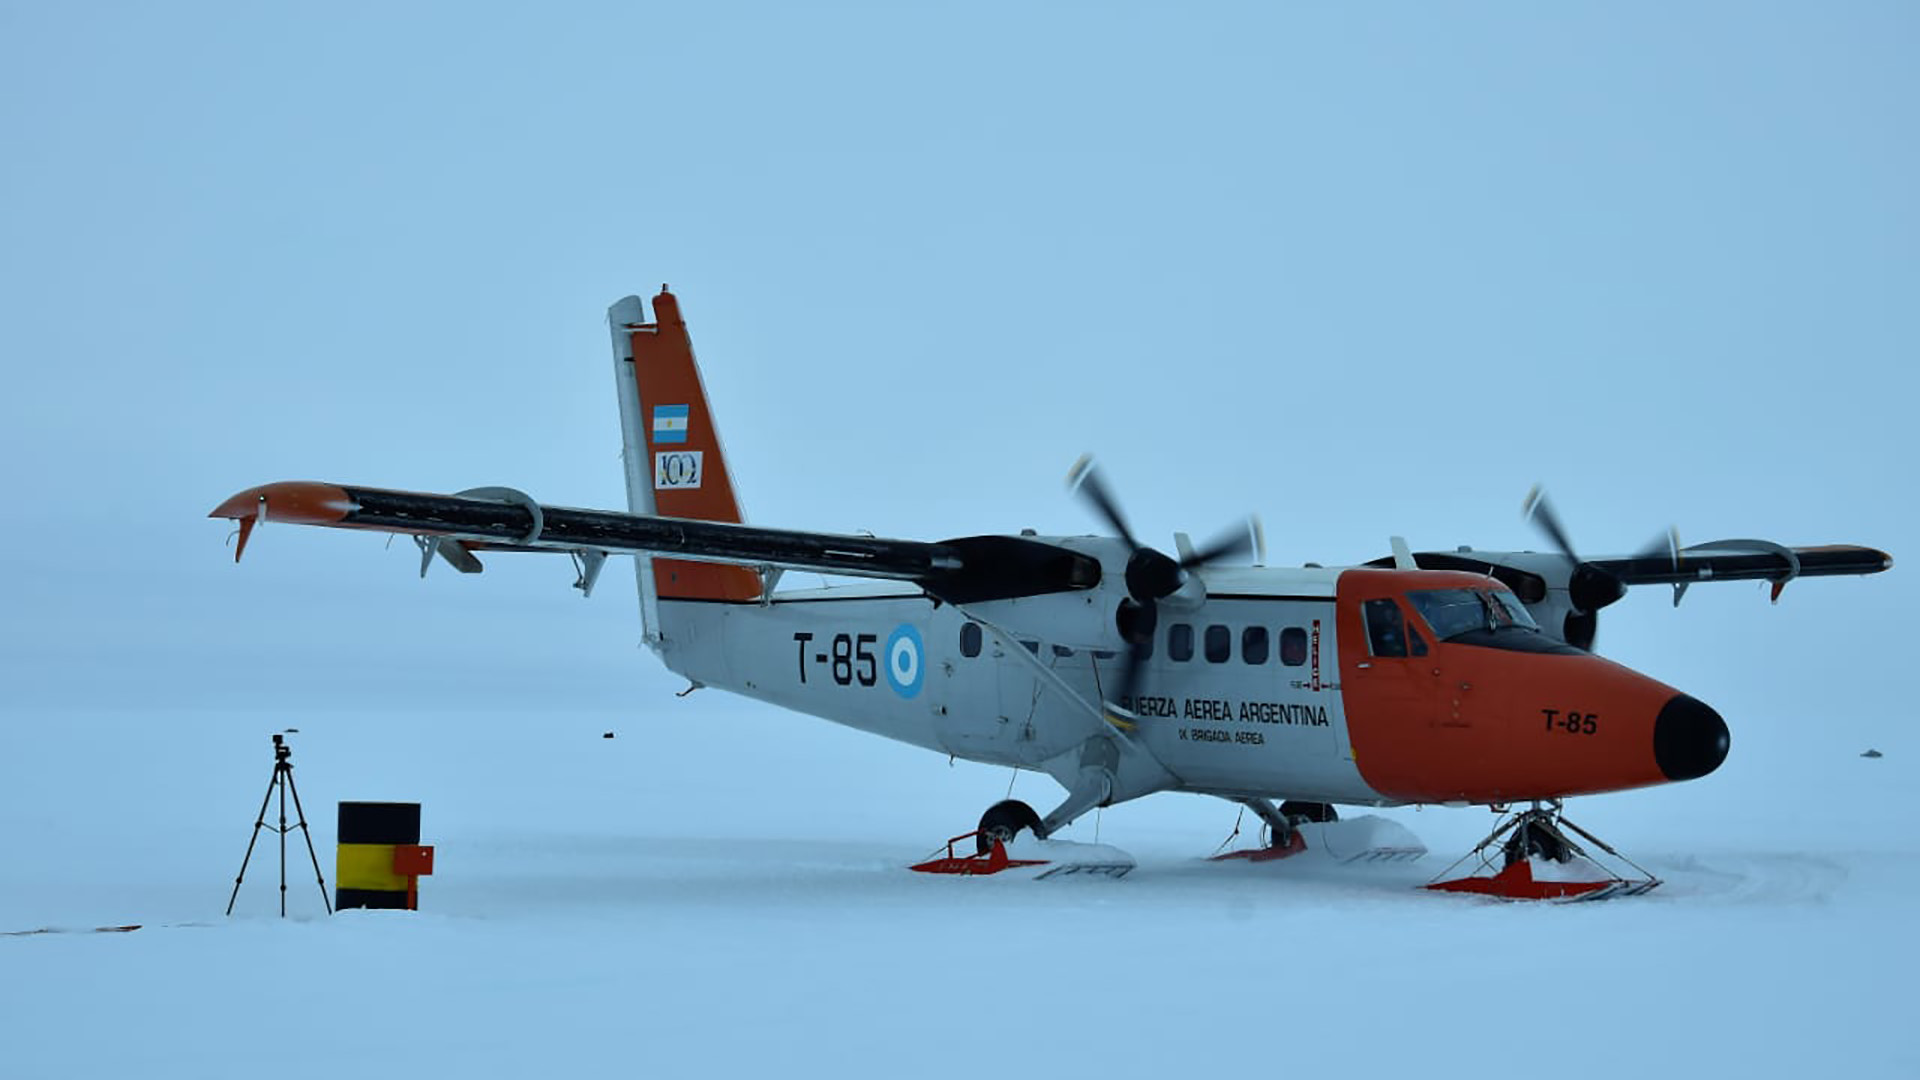  Avión Twin Otter  operando en la Antártida